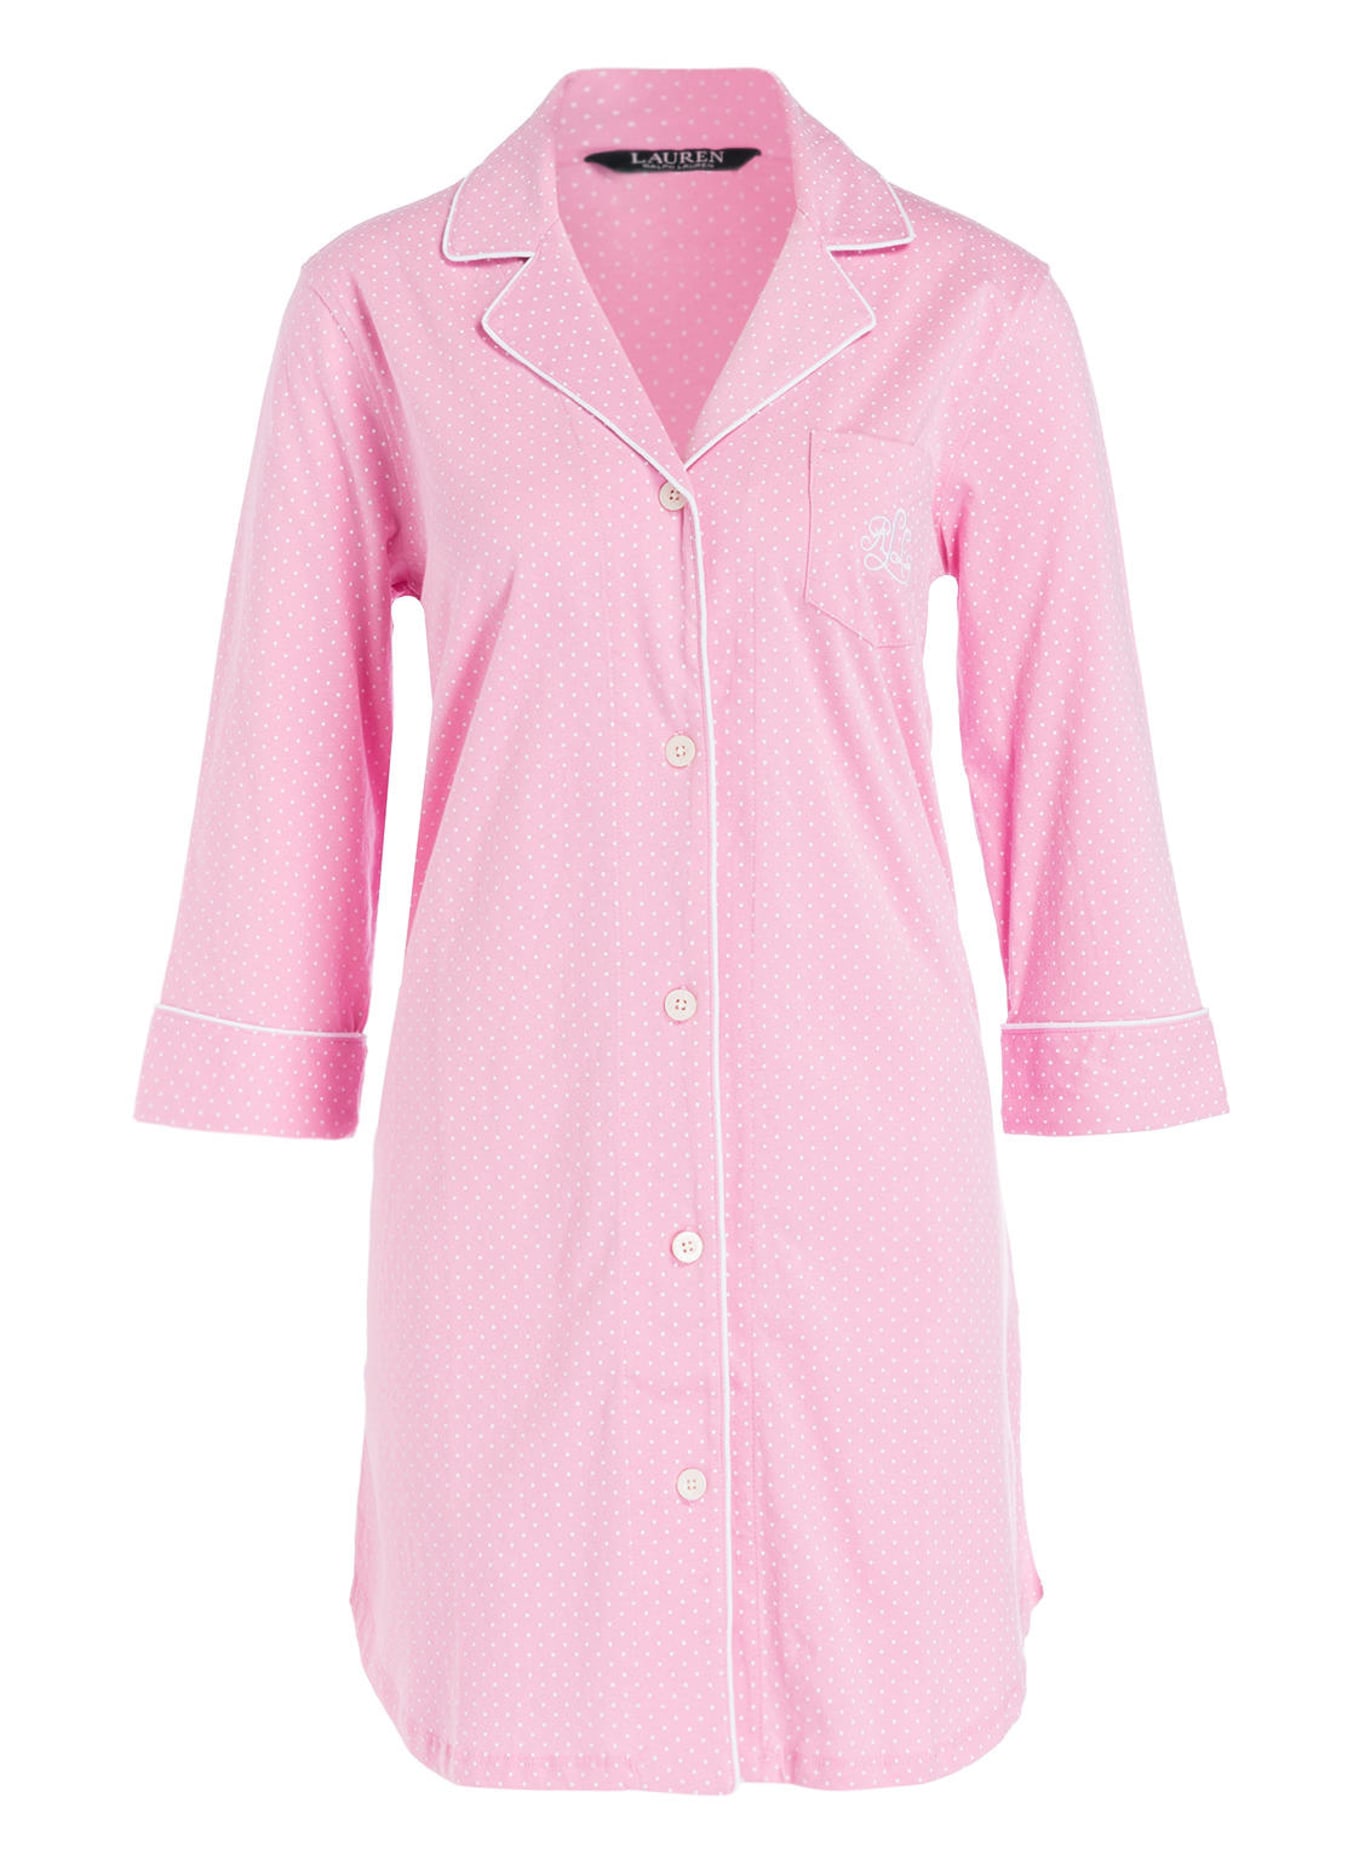 LAUREN RALPH LAUREN Nightgown with 3/4 sleeves, Color: PINK (Image 1)